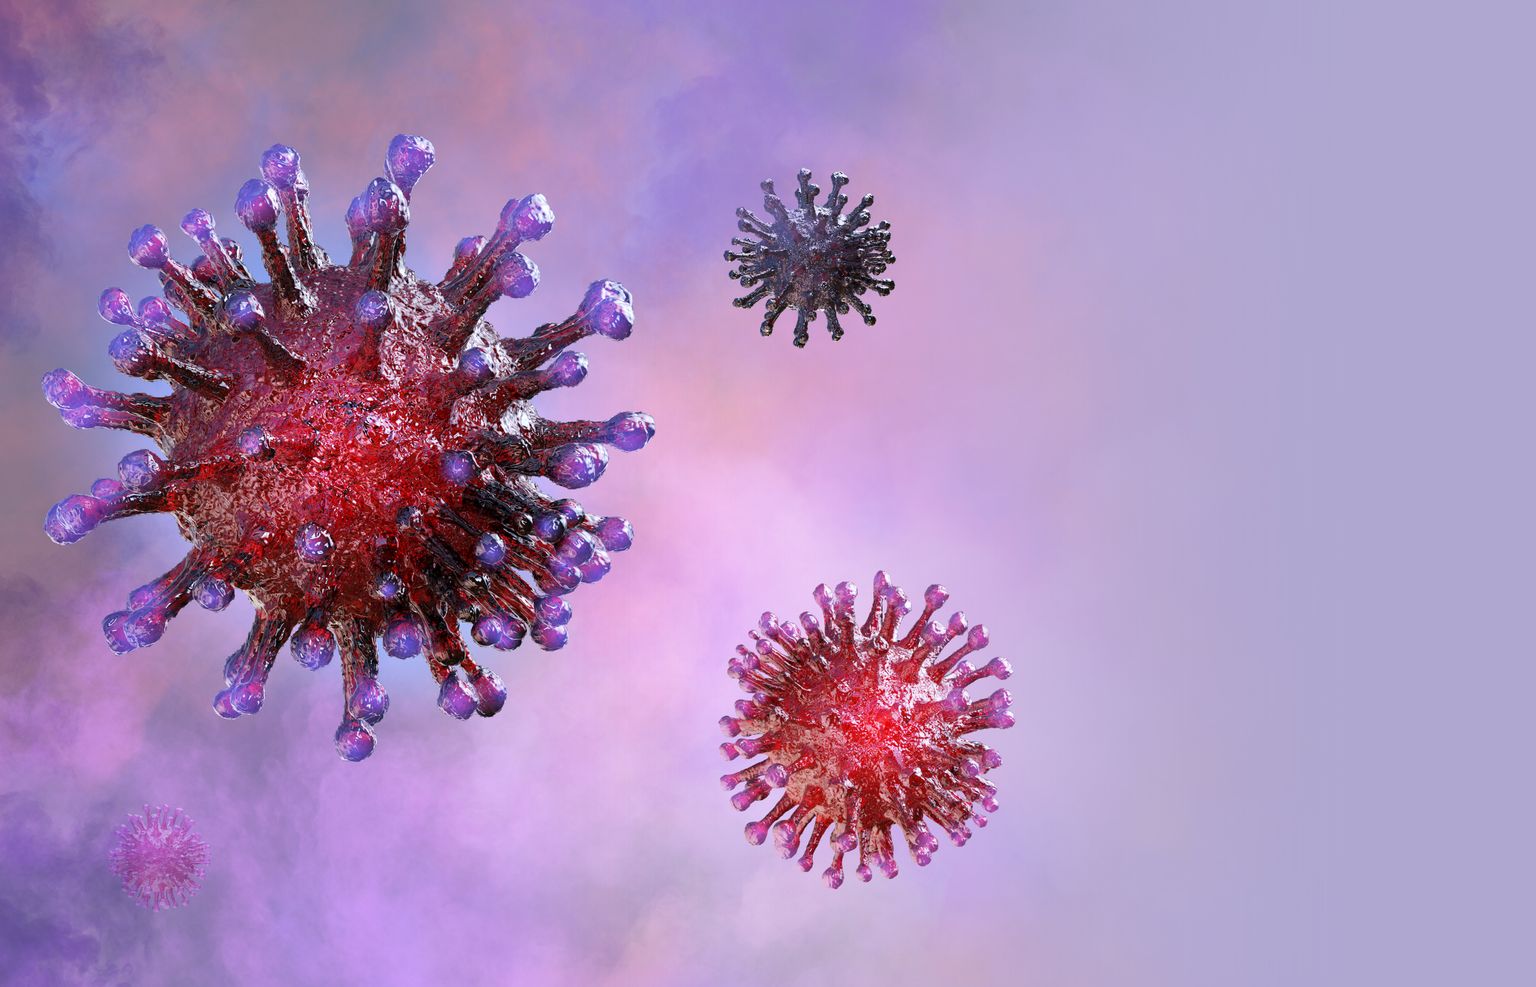 Koroonaviirus. Illustratsioon. Eelnevate koroonaviiruste mutatsioonid lasevad paremini prognoosida praegu leviva koroonaviiruse omi.